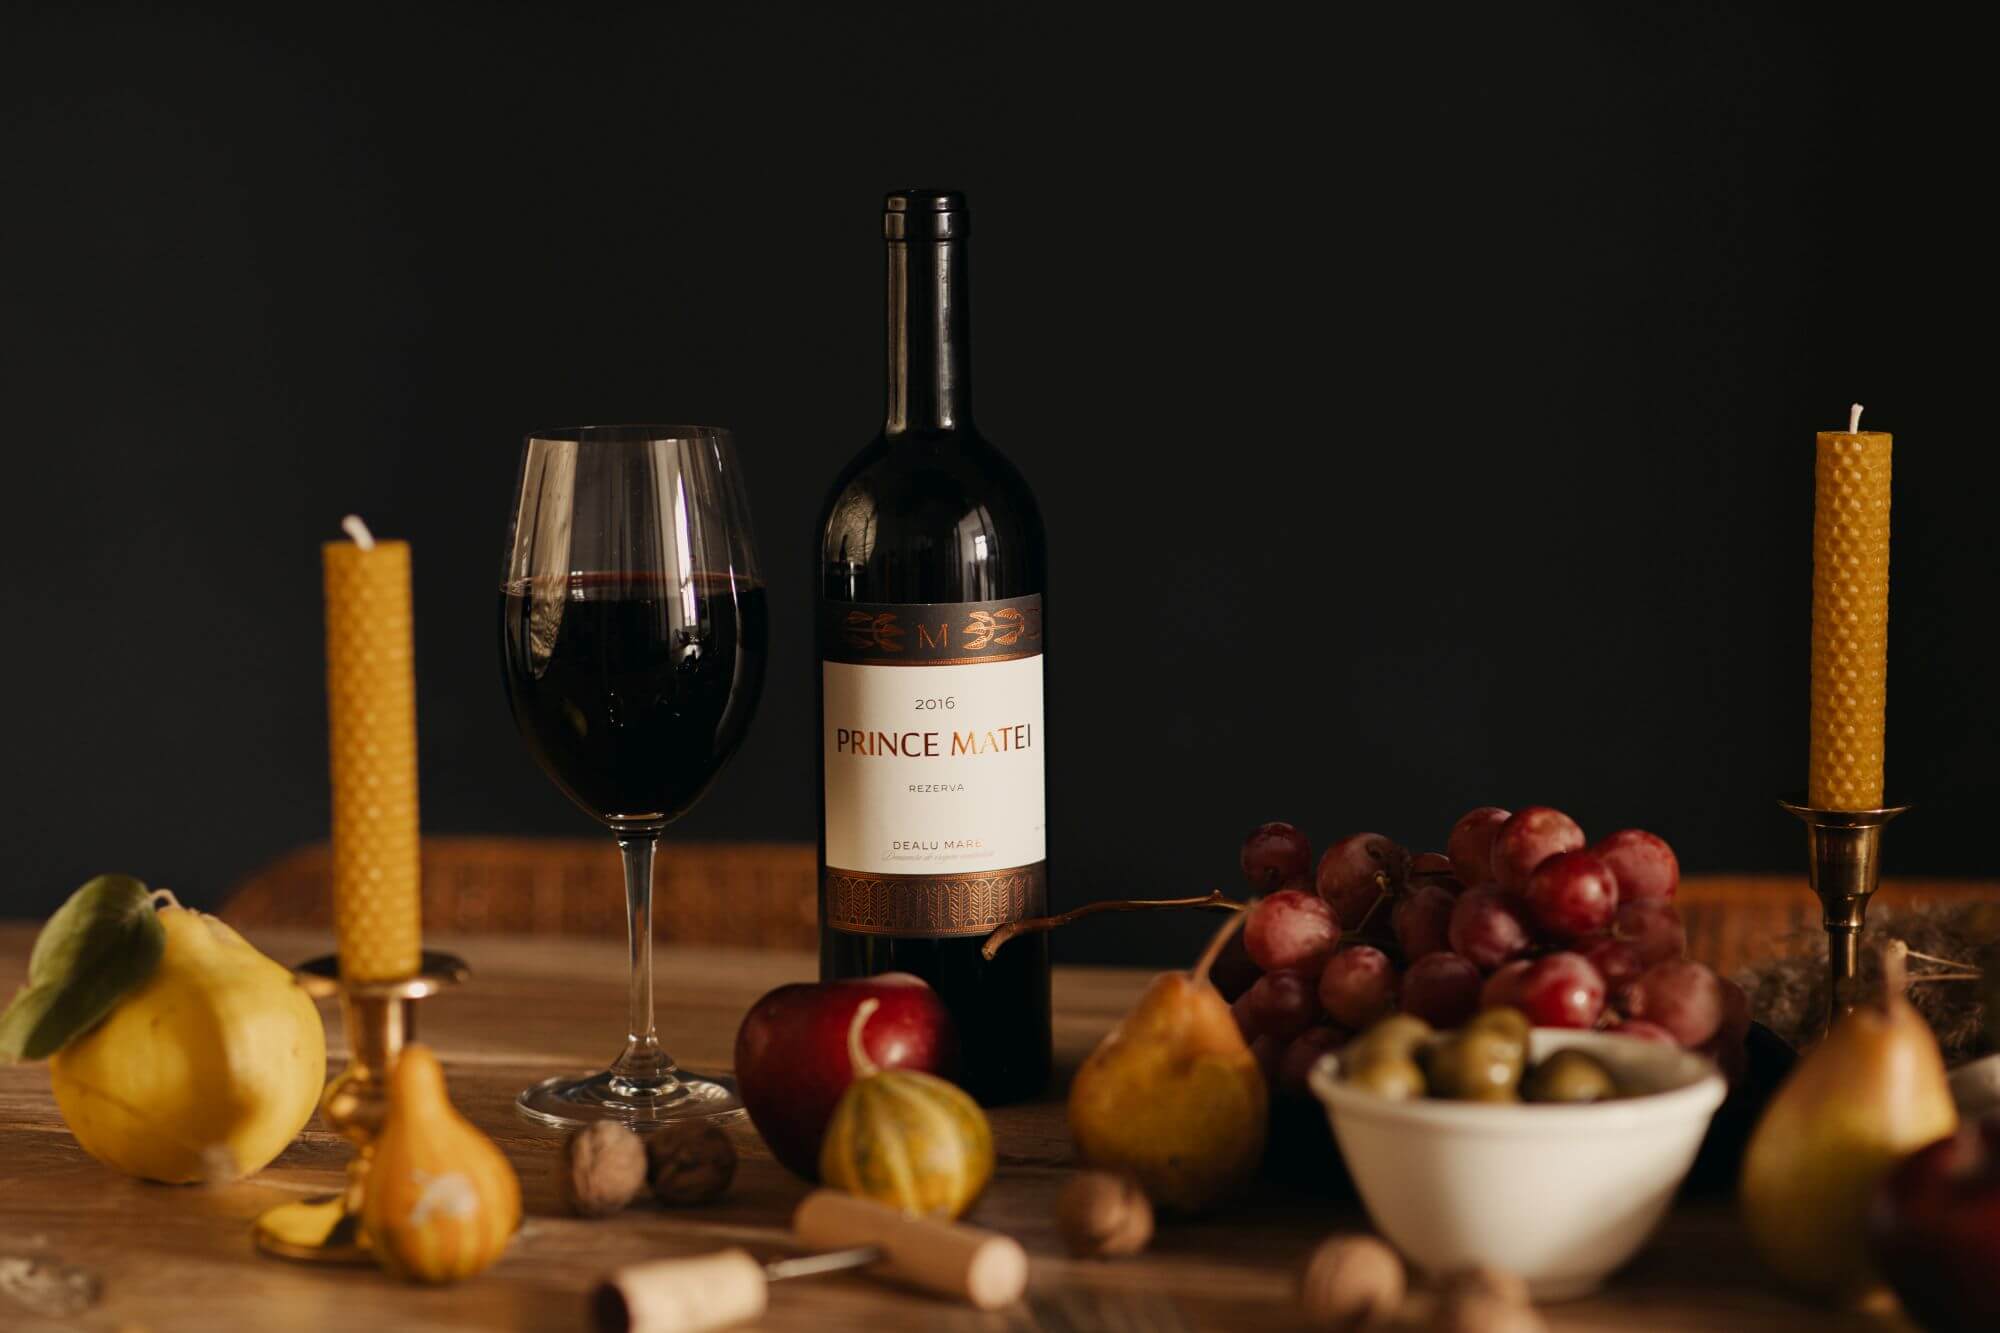 Se lansează pe piață Prince Matei 2016, un vin de colecție, din Dealu Mare